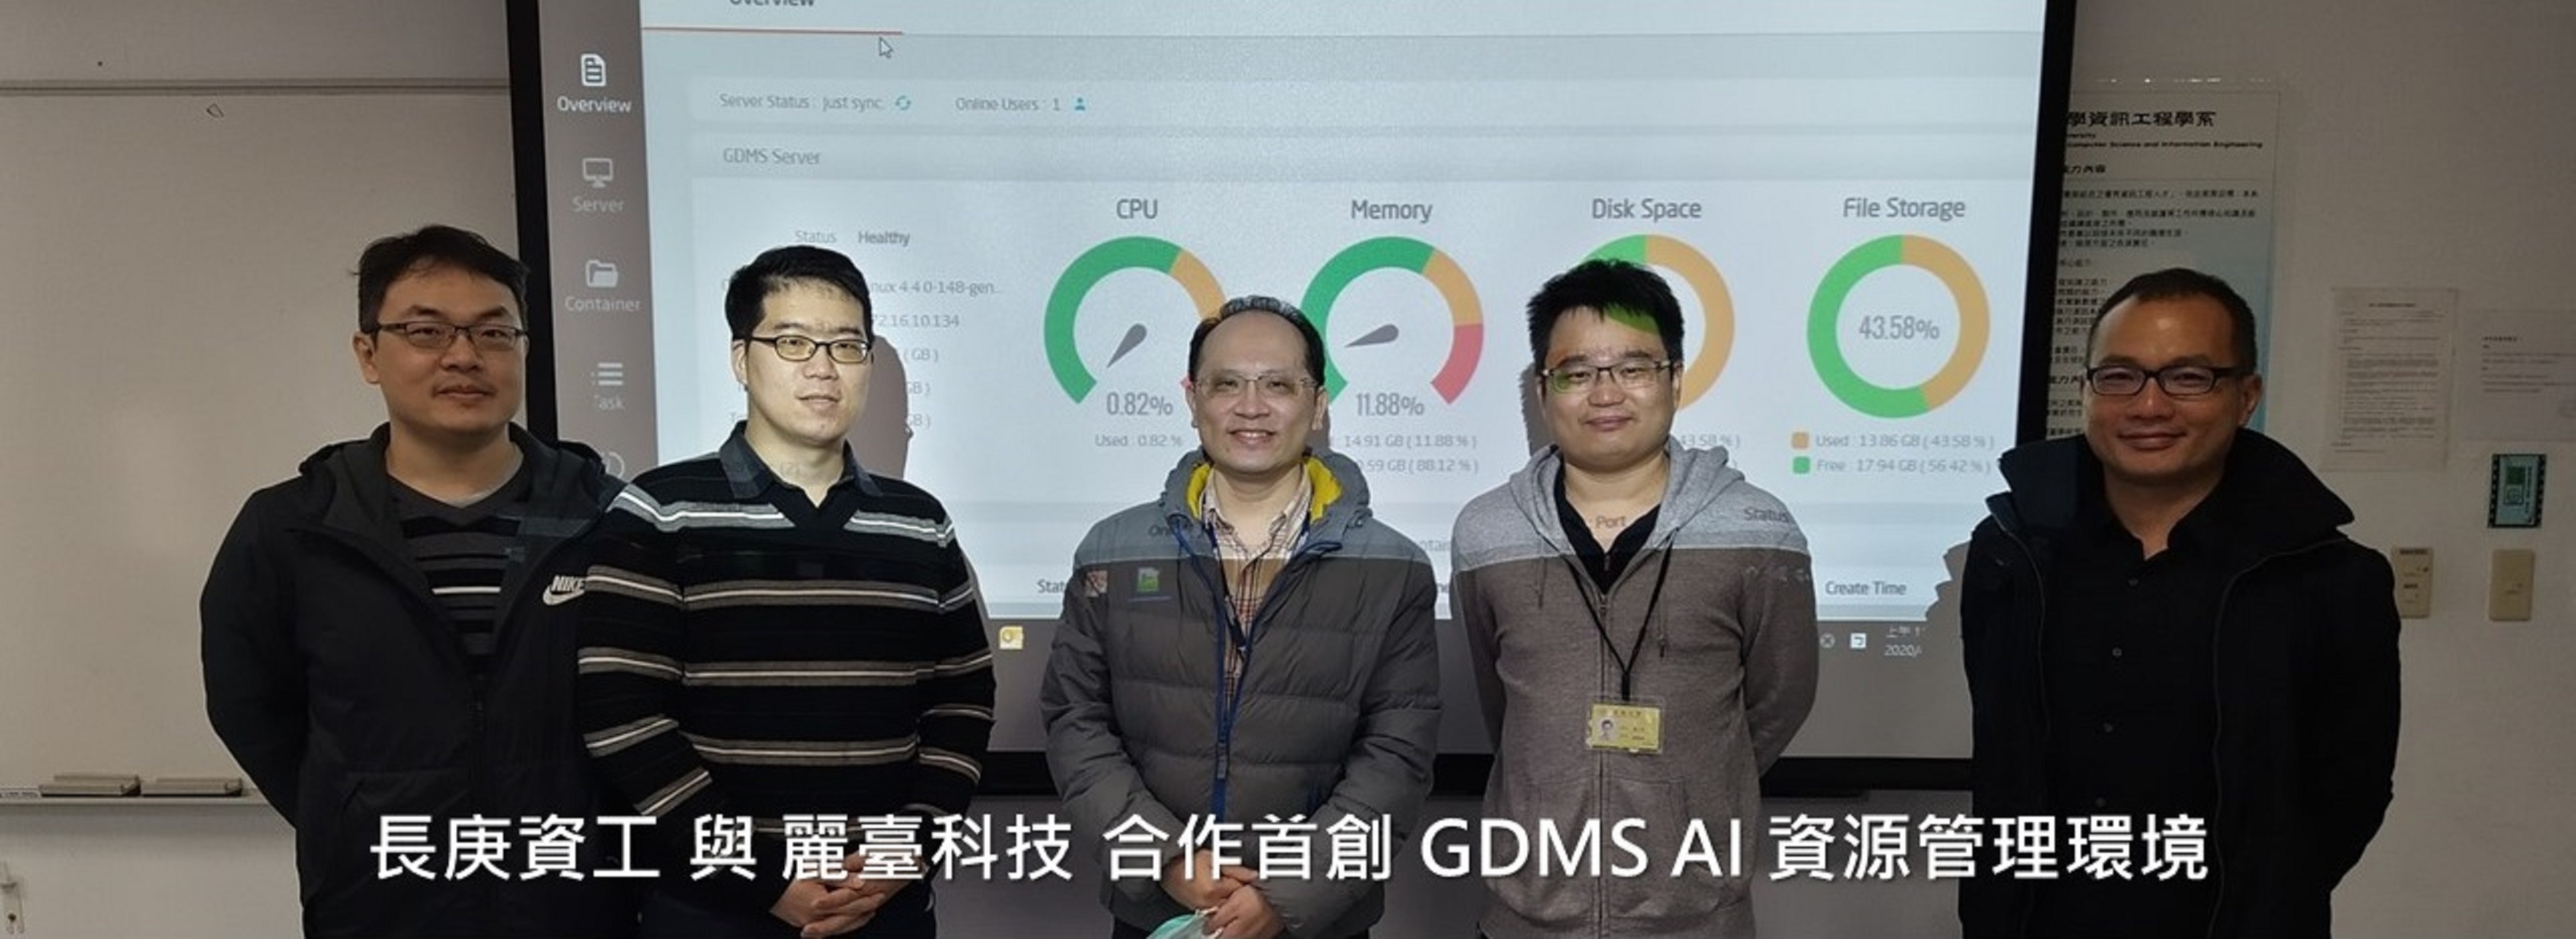 長庚資工與麗臺科技合作首創GDMS AI資源管理環境